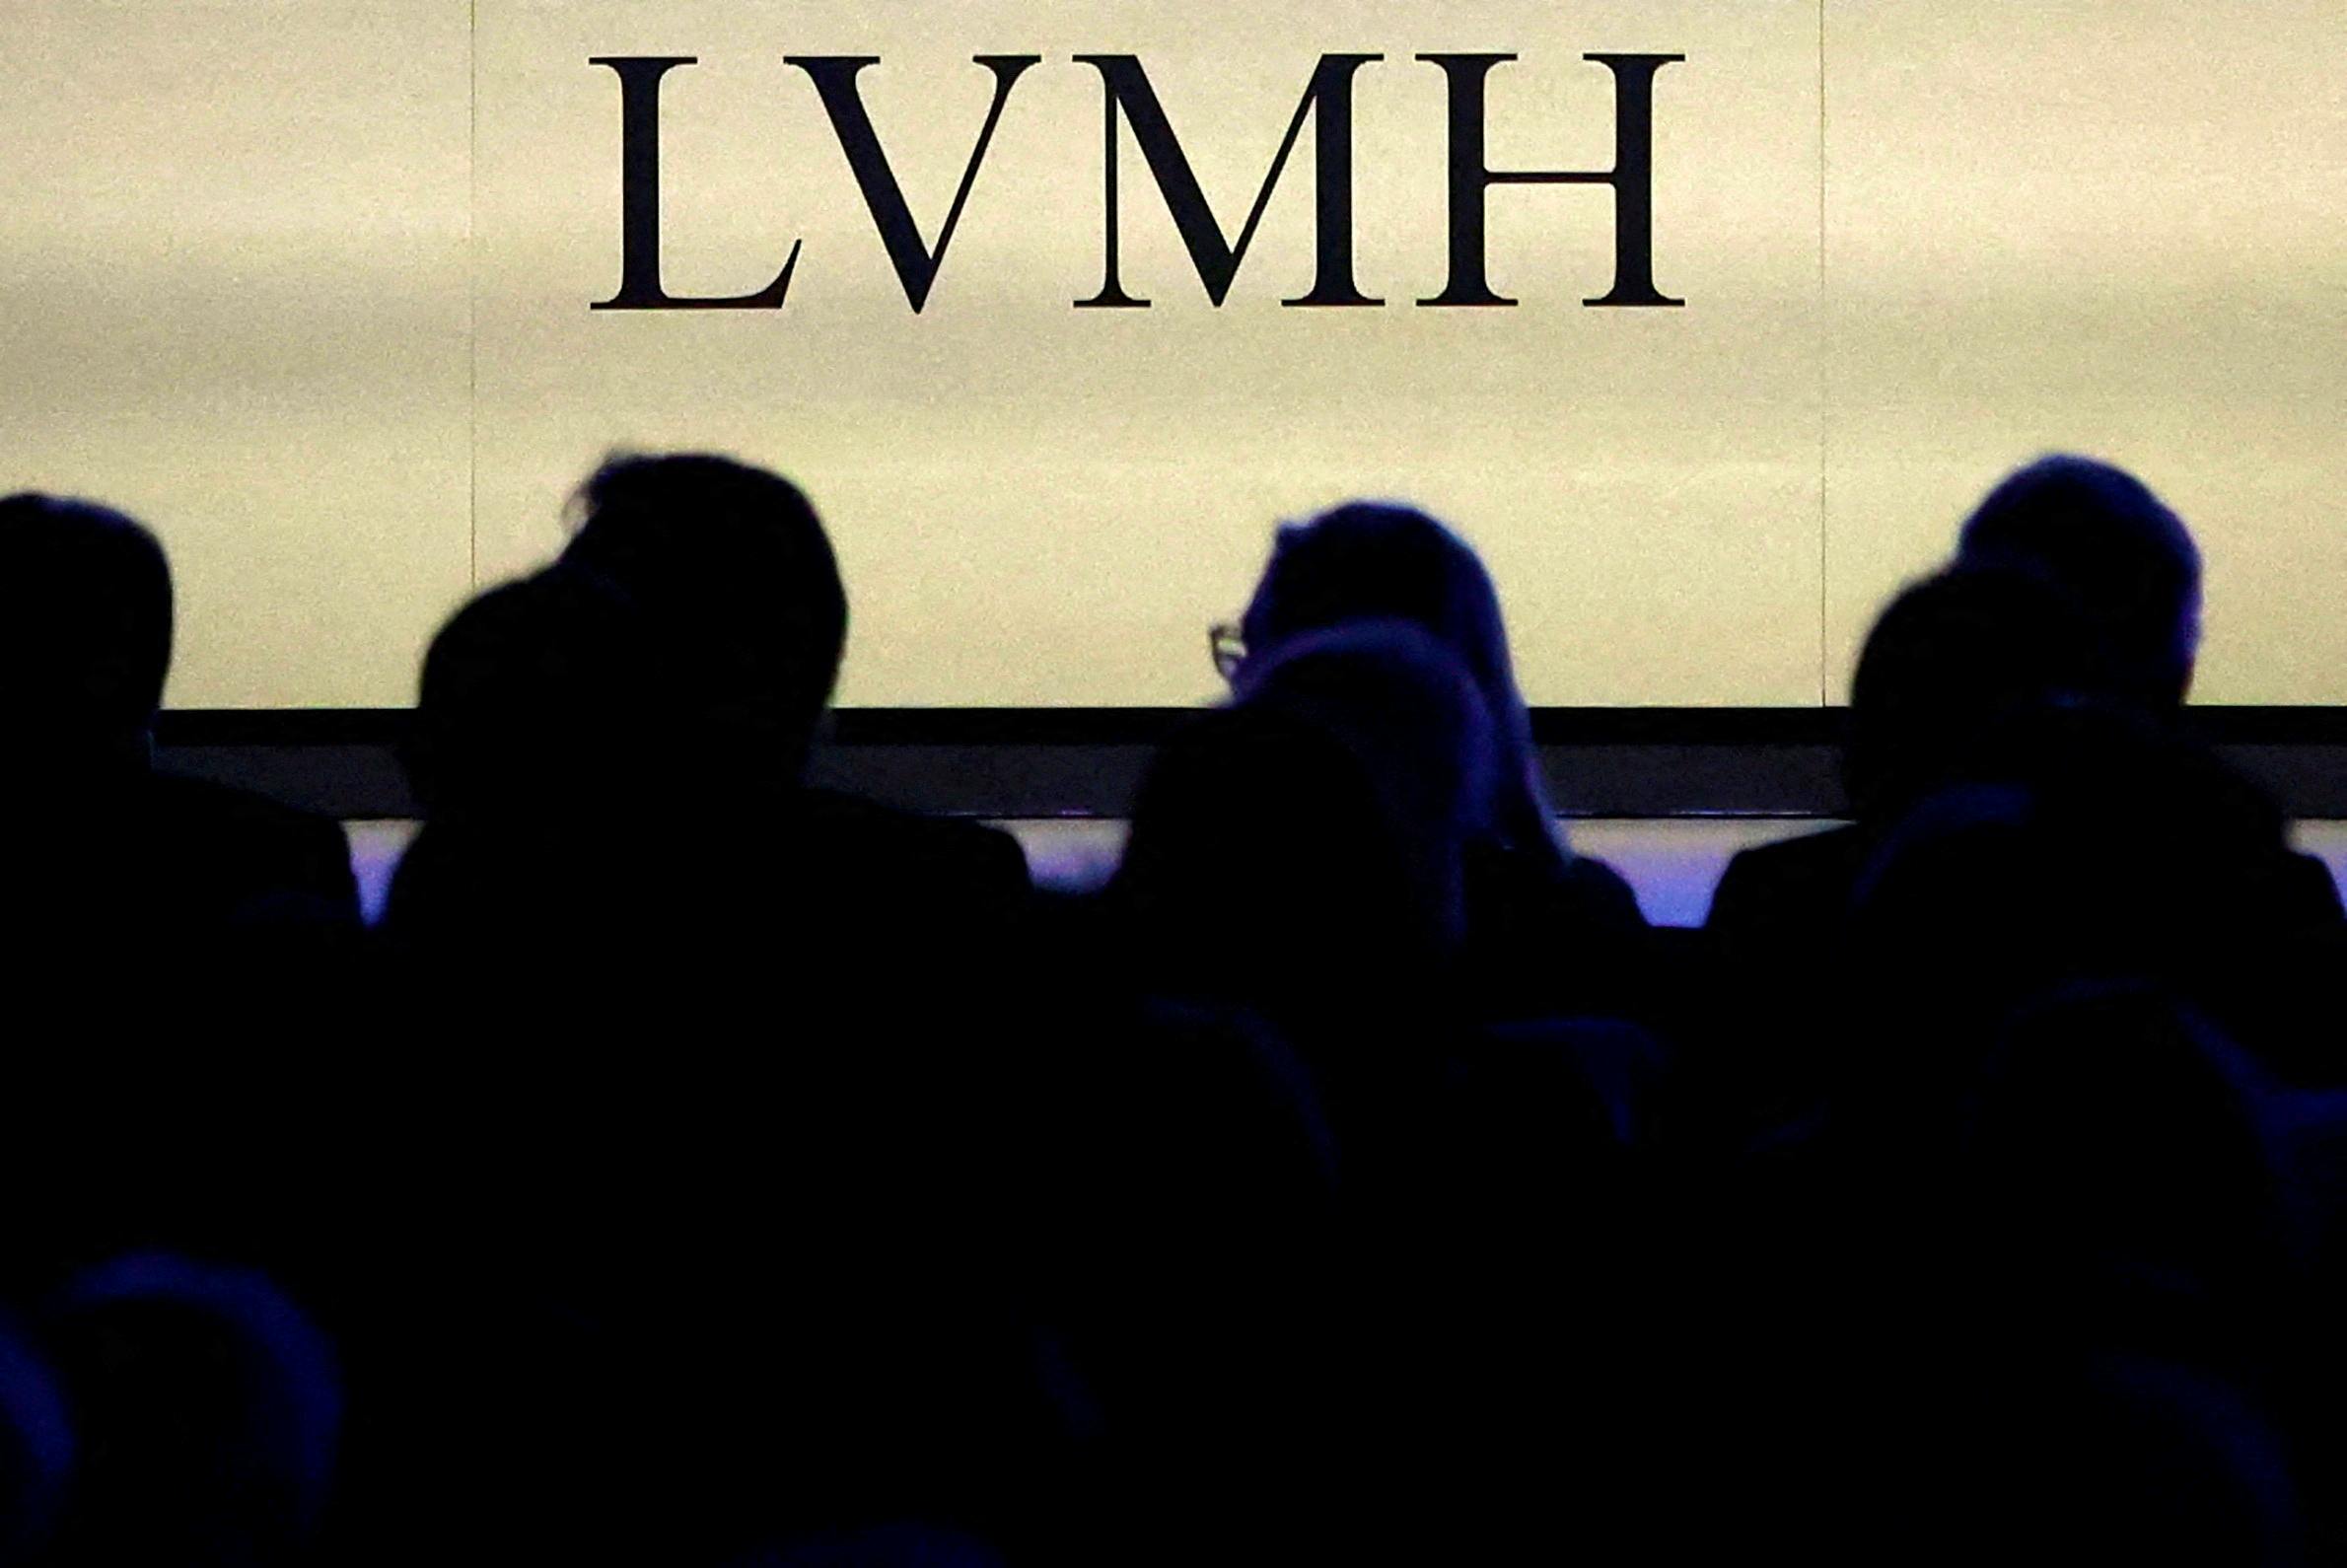 LVMH chief Bernard Arnault, daughter embark on China tour